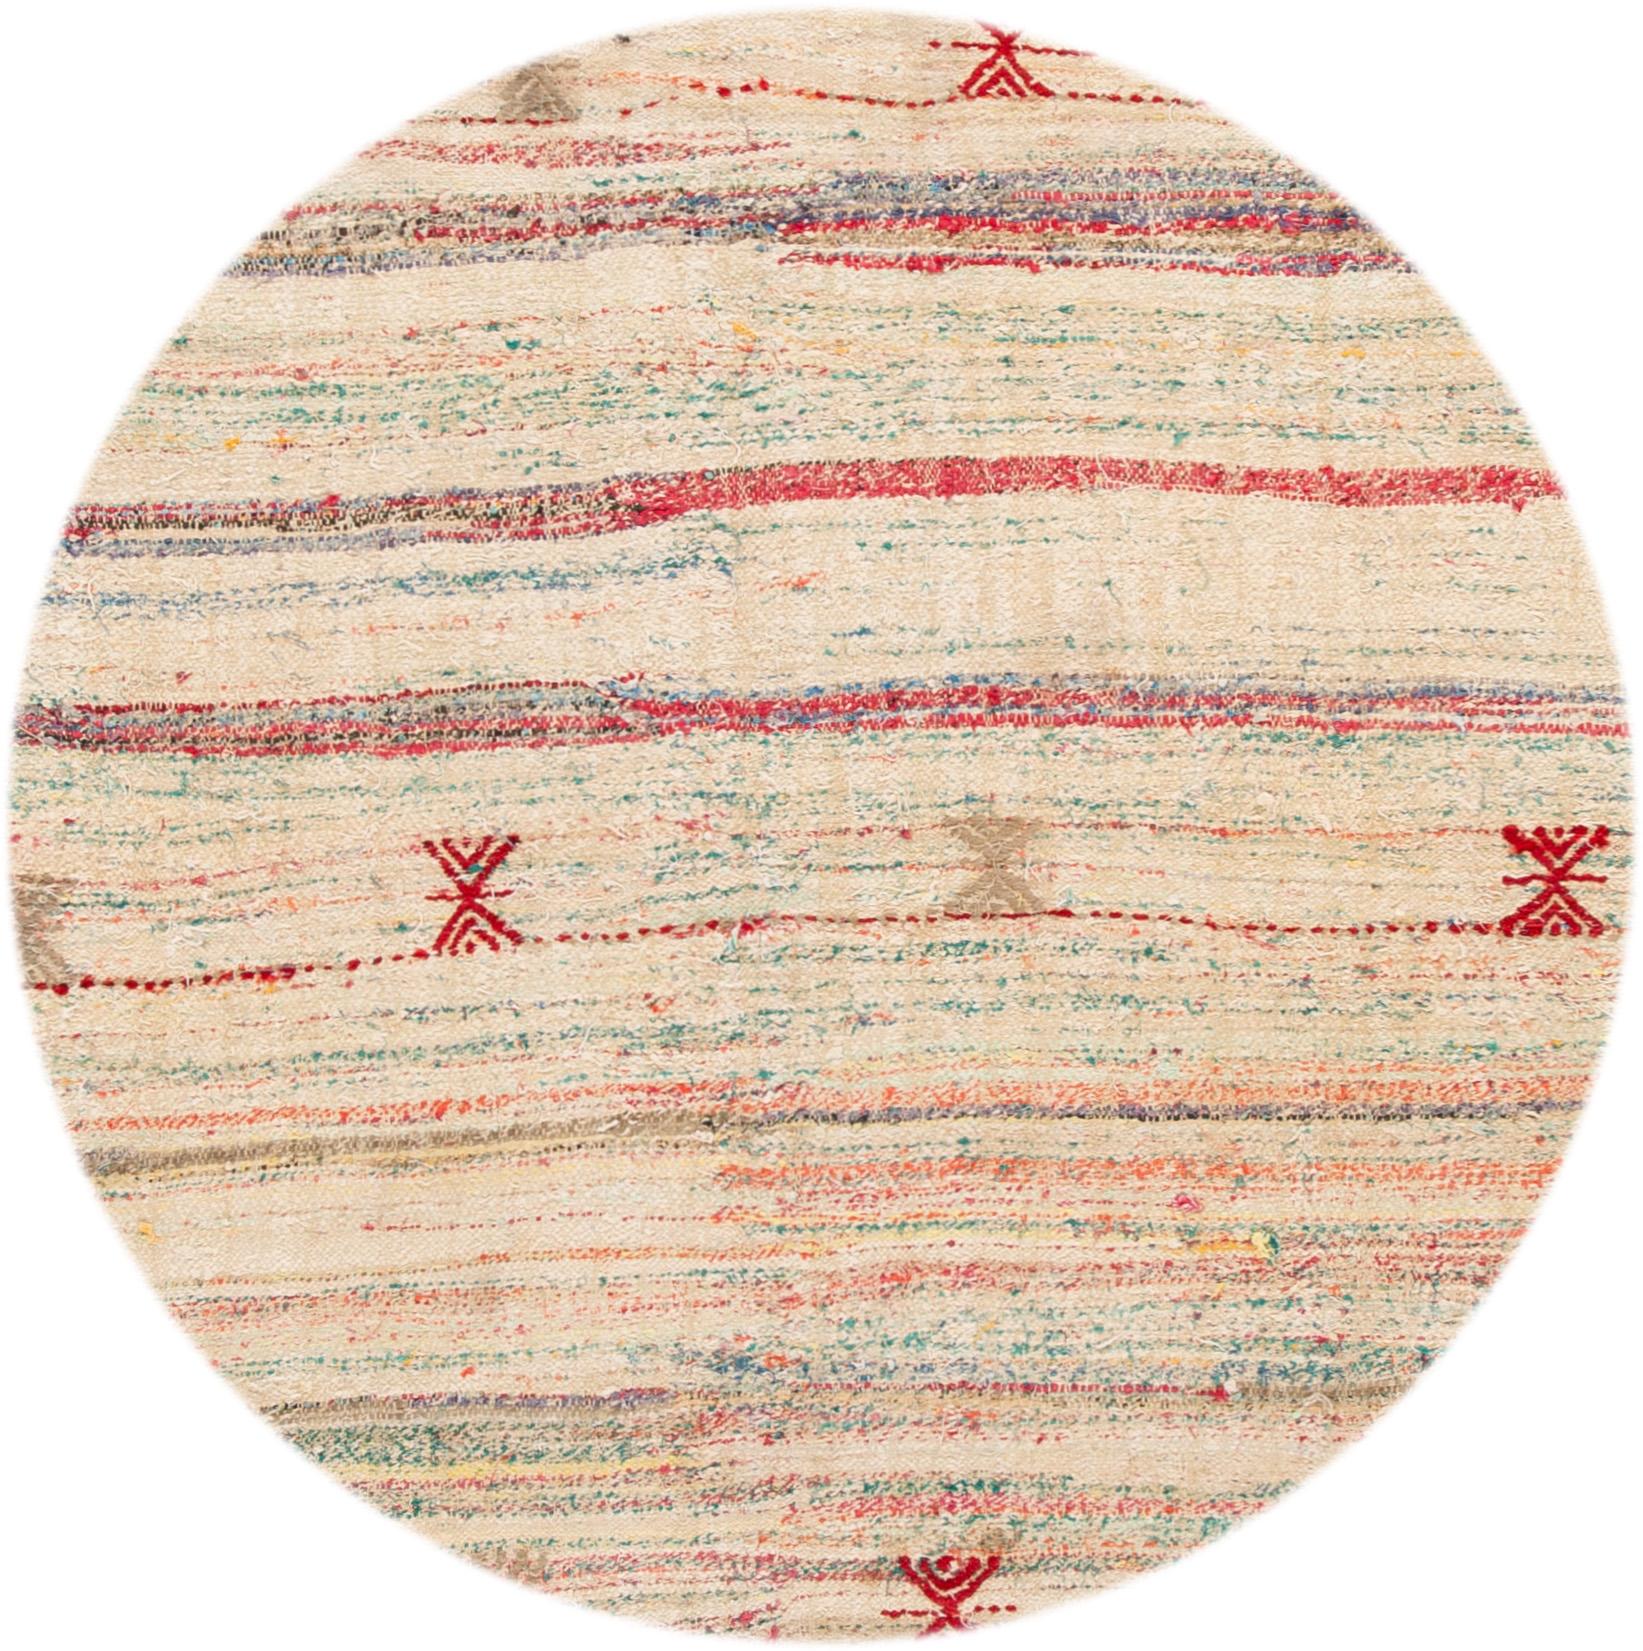 Magnifique tapis Kilim en laine ancien noué à la main. Ce tapis présente un champ ivoire avec des accents géométriques bleu clair et rouge, vers 1920.

Ce tapis mesure : 6'6